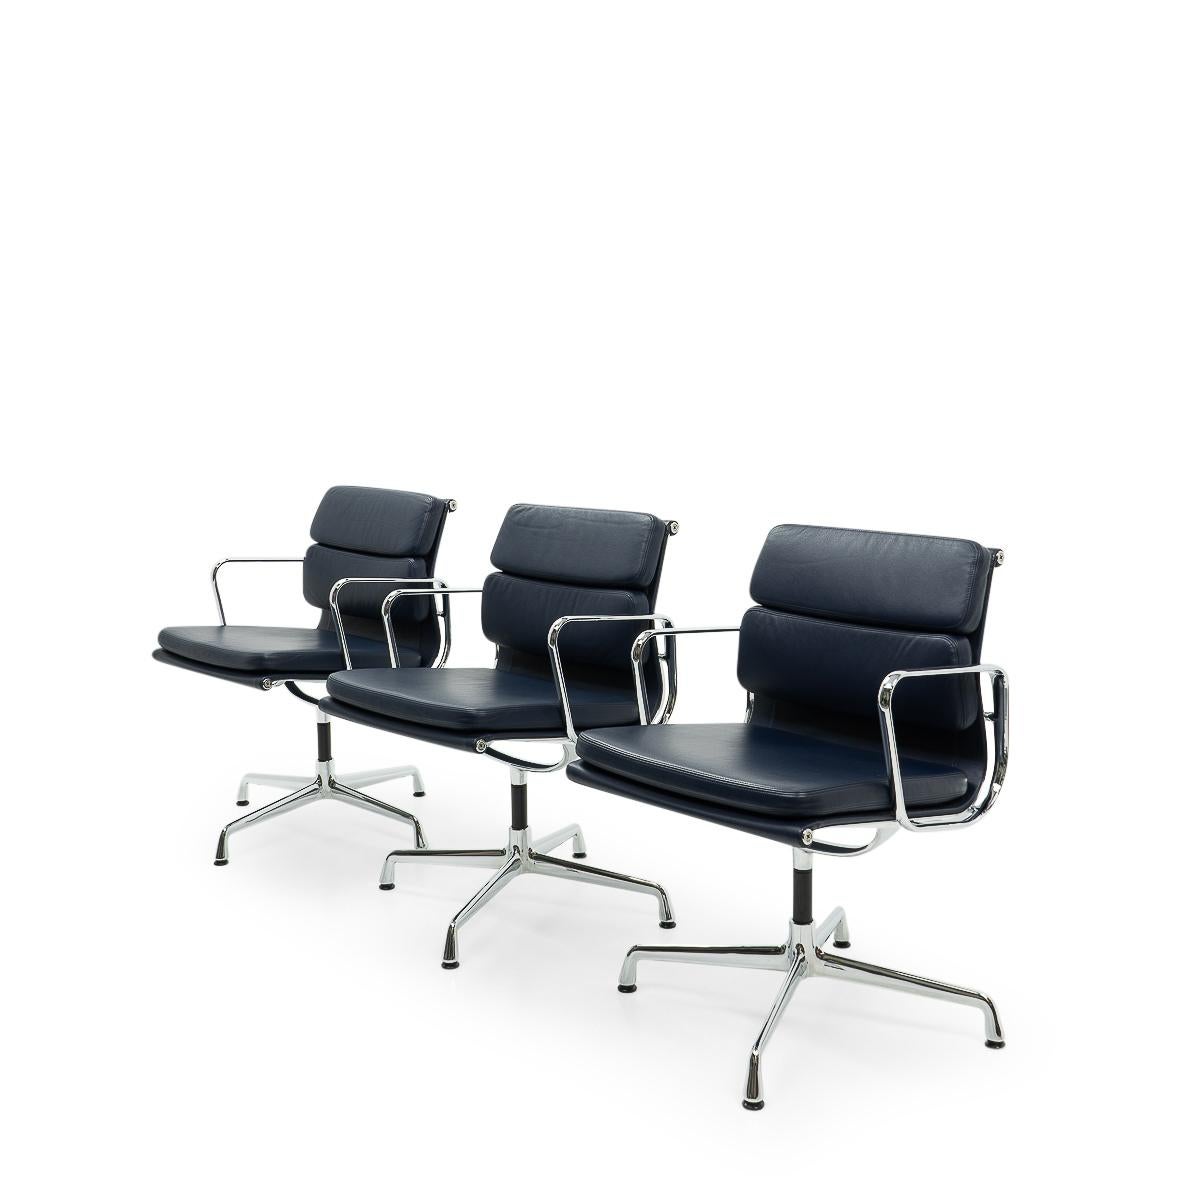 Les chaises de groupe en aluminium de Charles et Ray Eames sont l'un des designs les plus importants du 20e siècle. Leur design original des années 1950 est toujours d'actualité et confère aux intérieurs du monde entier une touche d'élégance